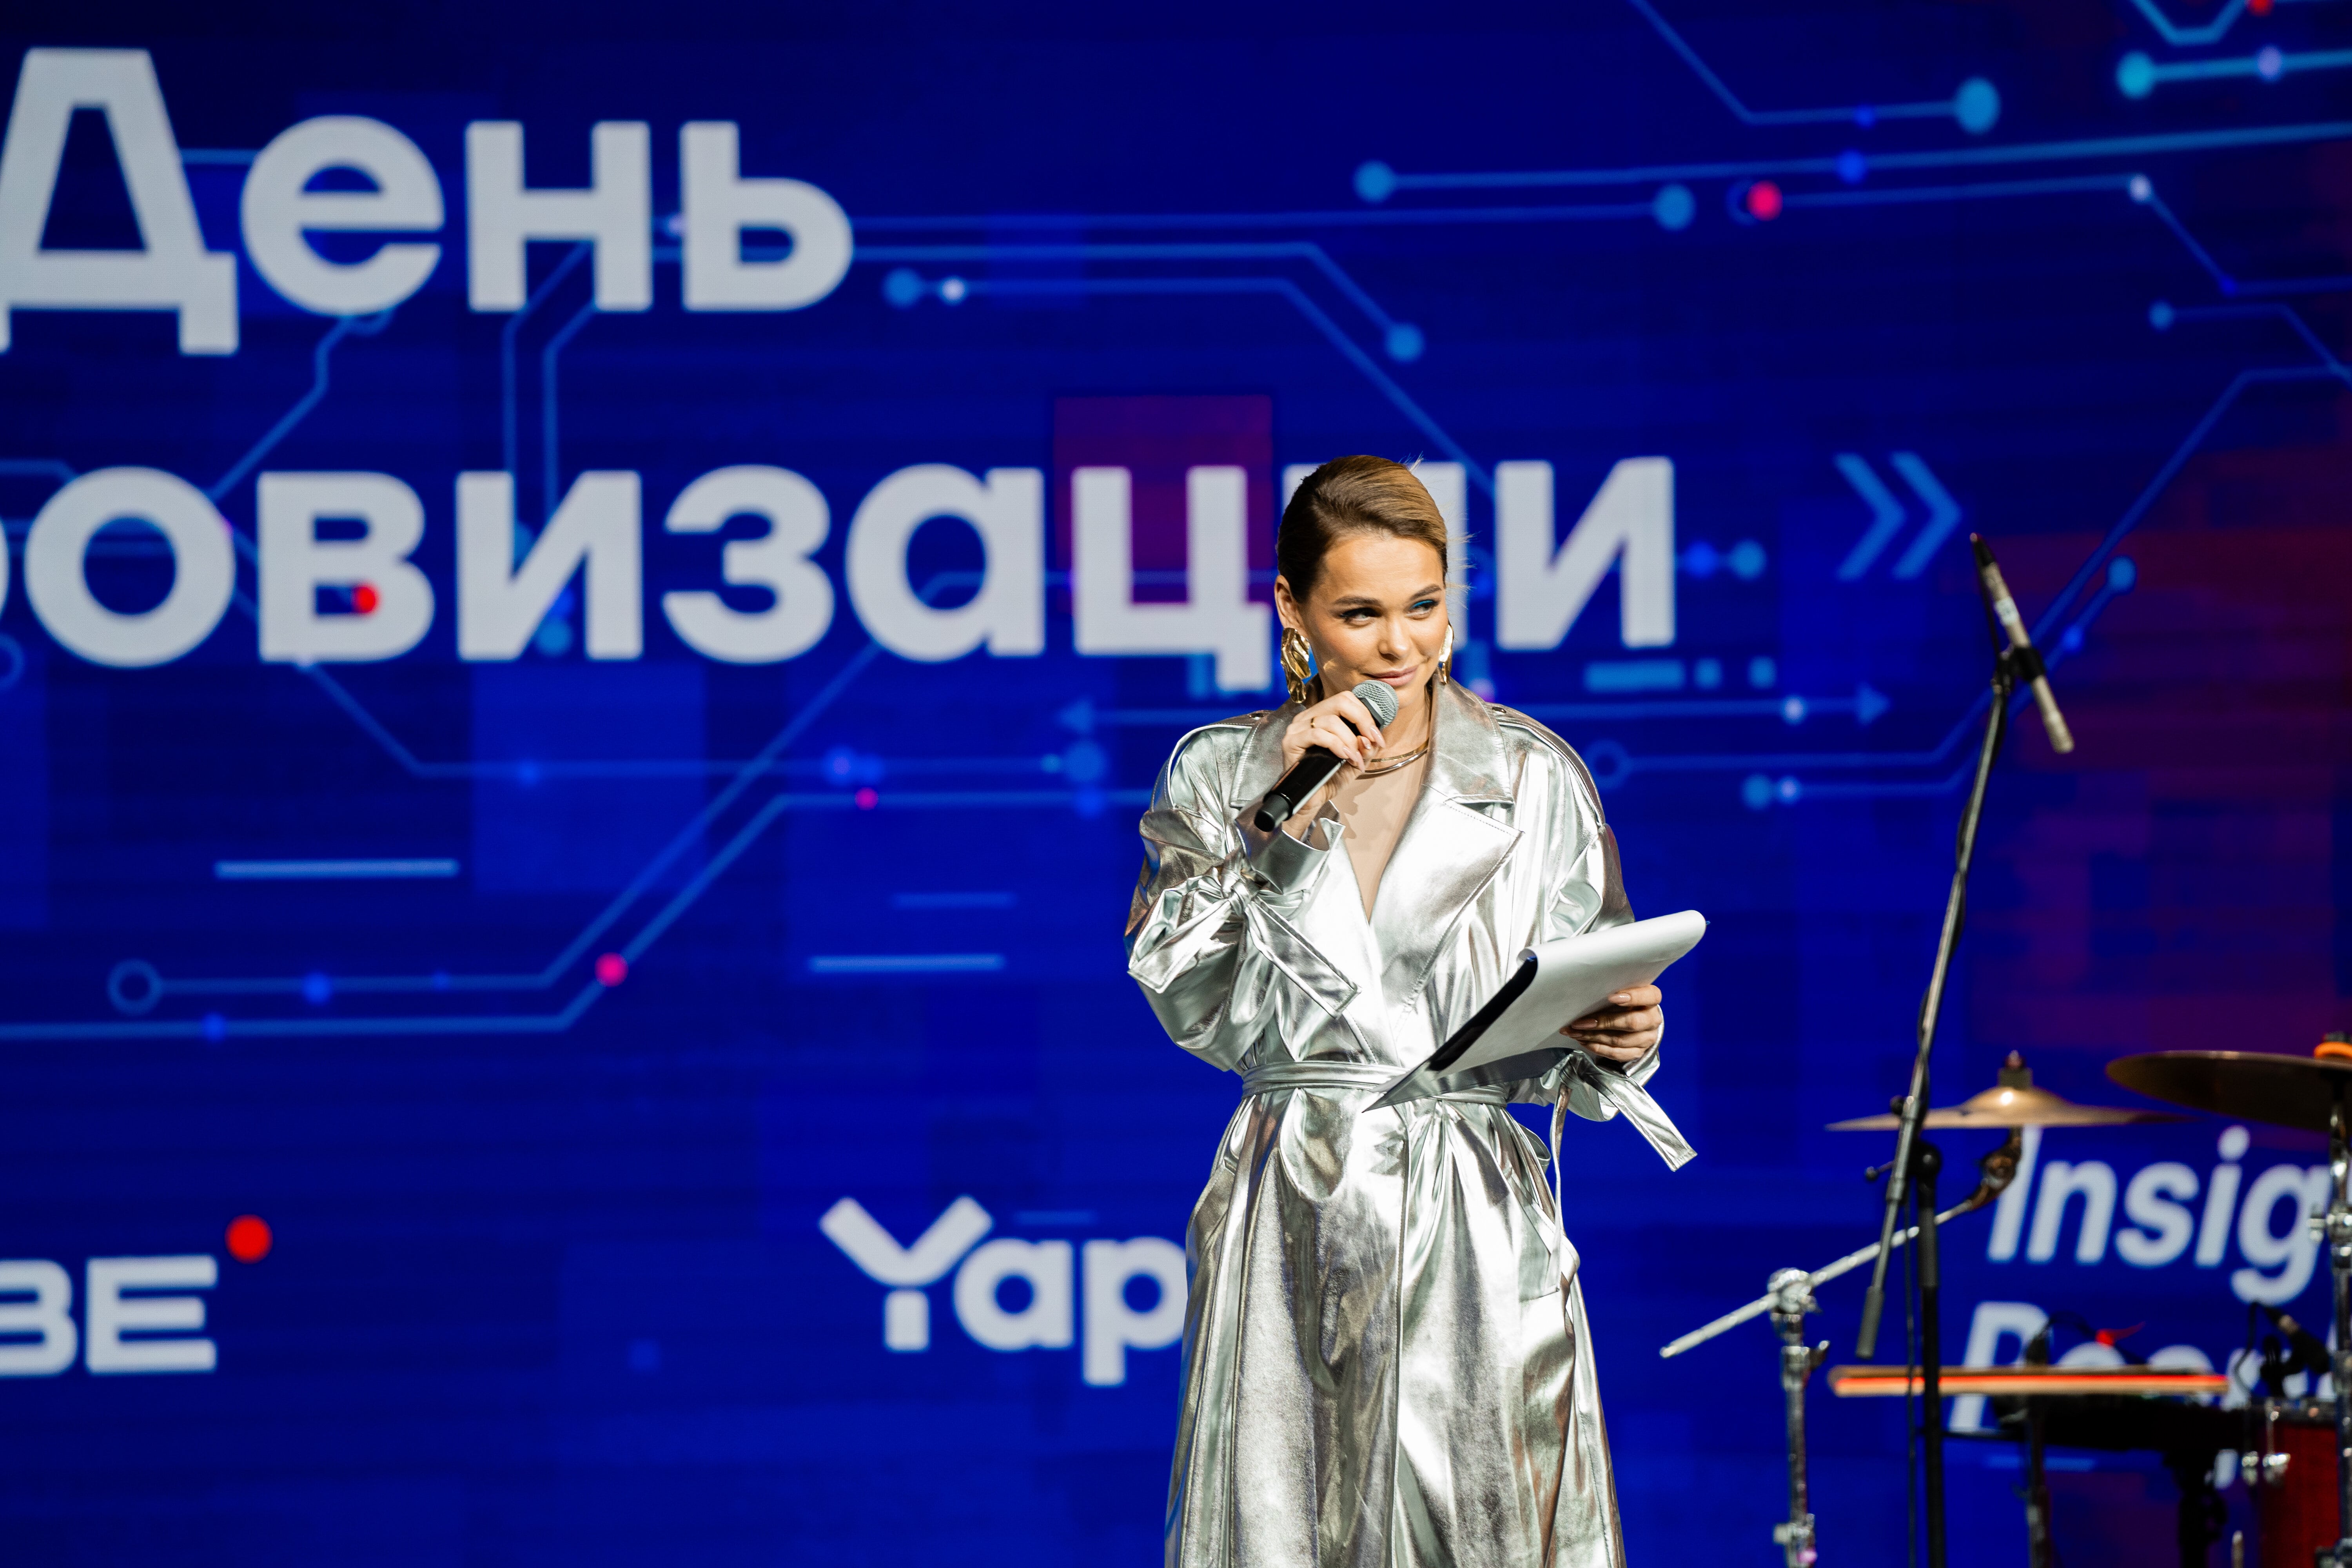 фото: Анна Хилькевич выступила ведущей на Дне Цифровизации Минцифры РФ на ВДНХ